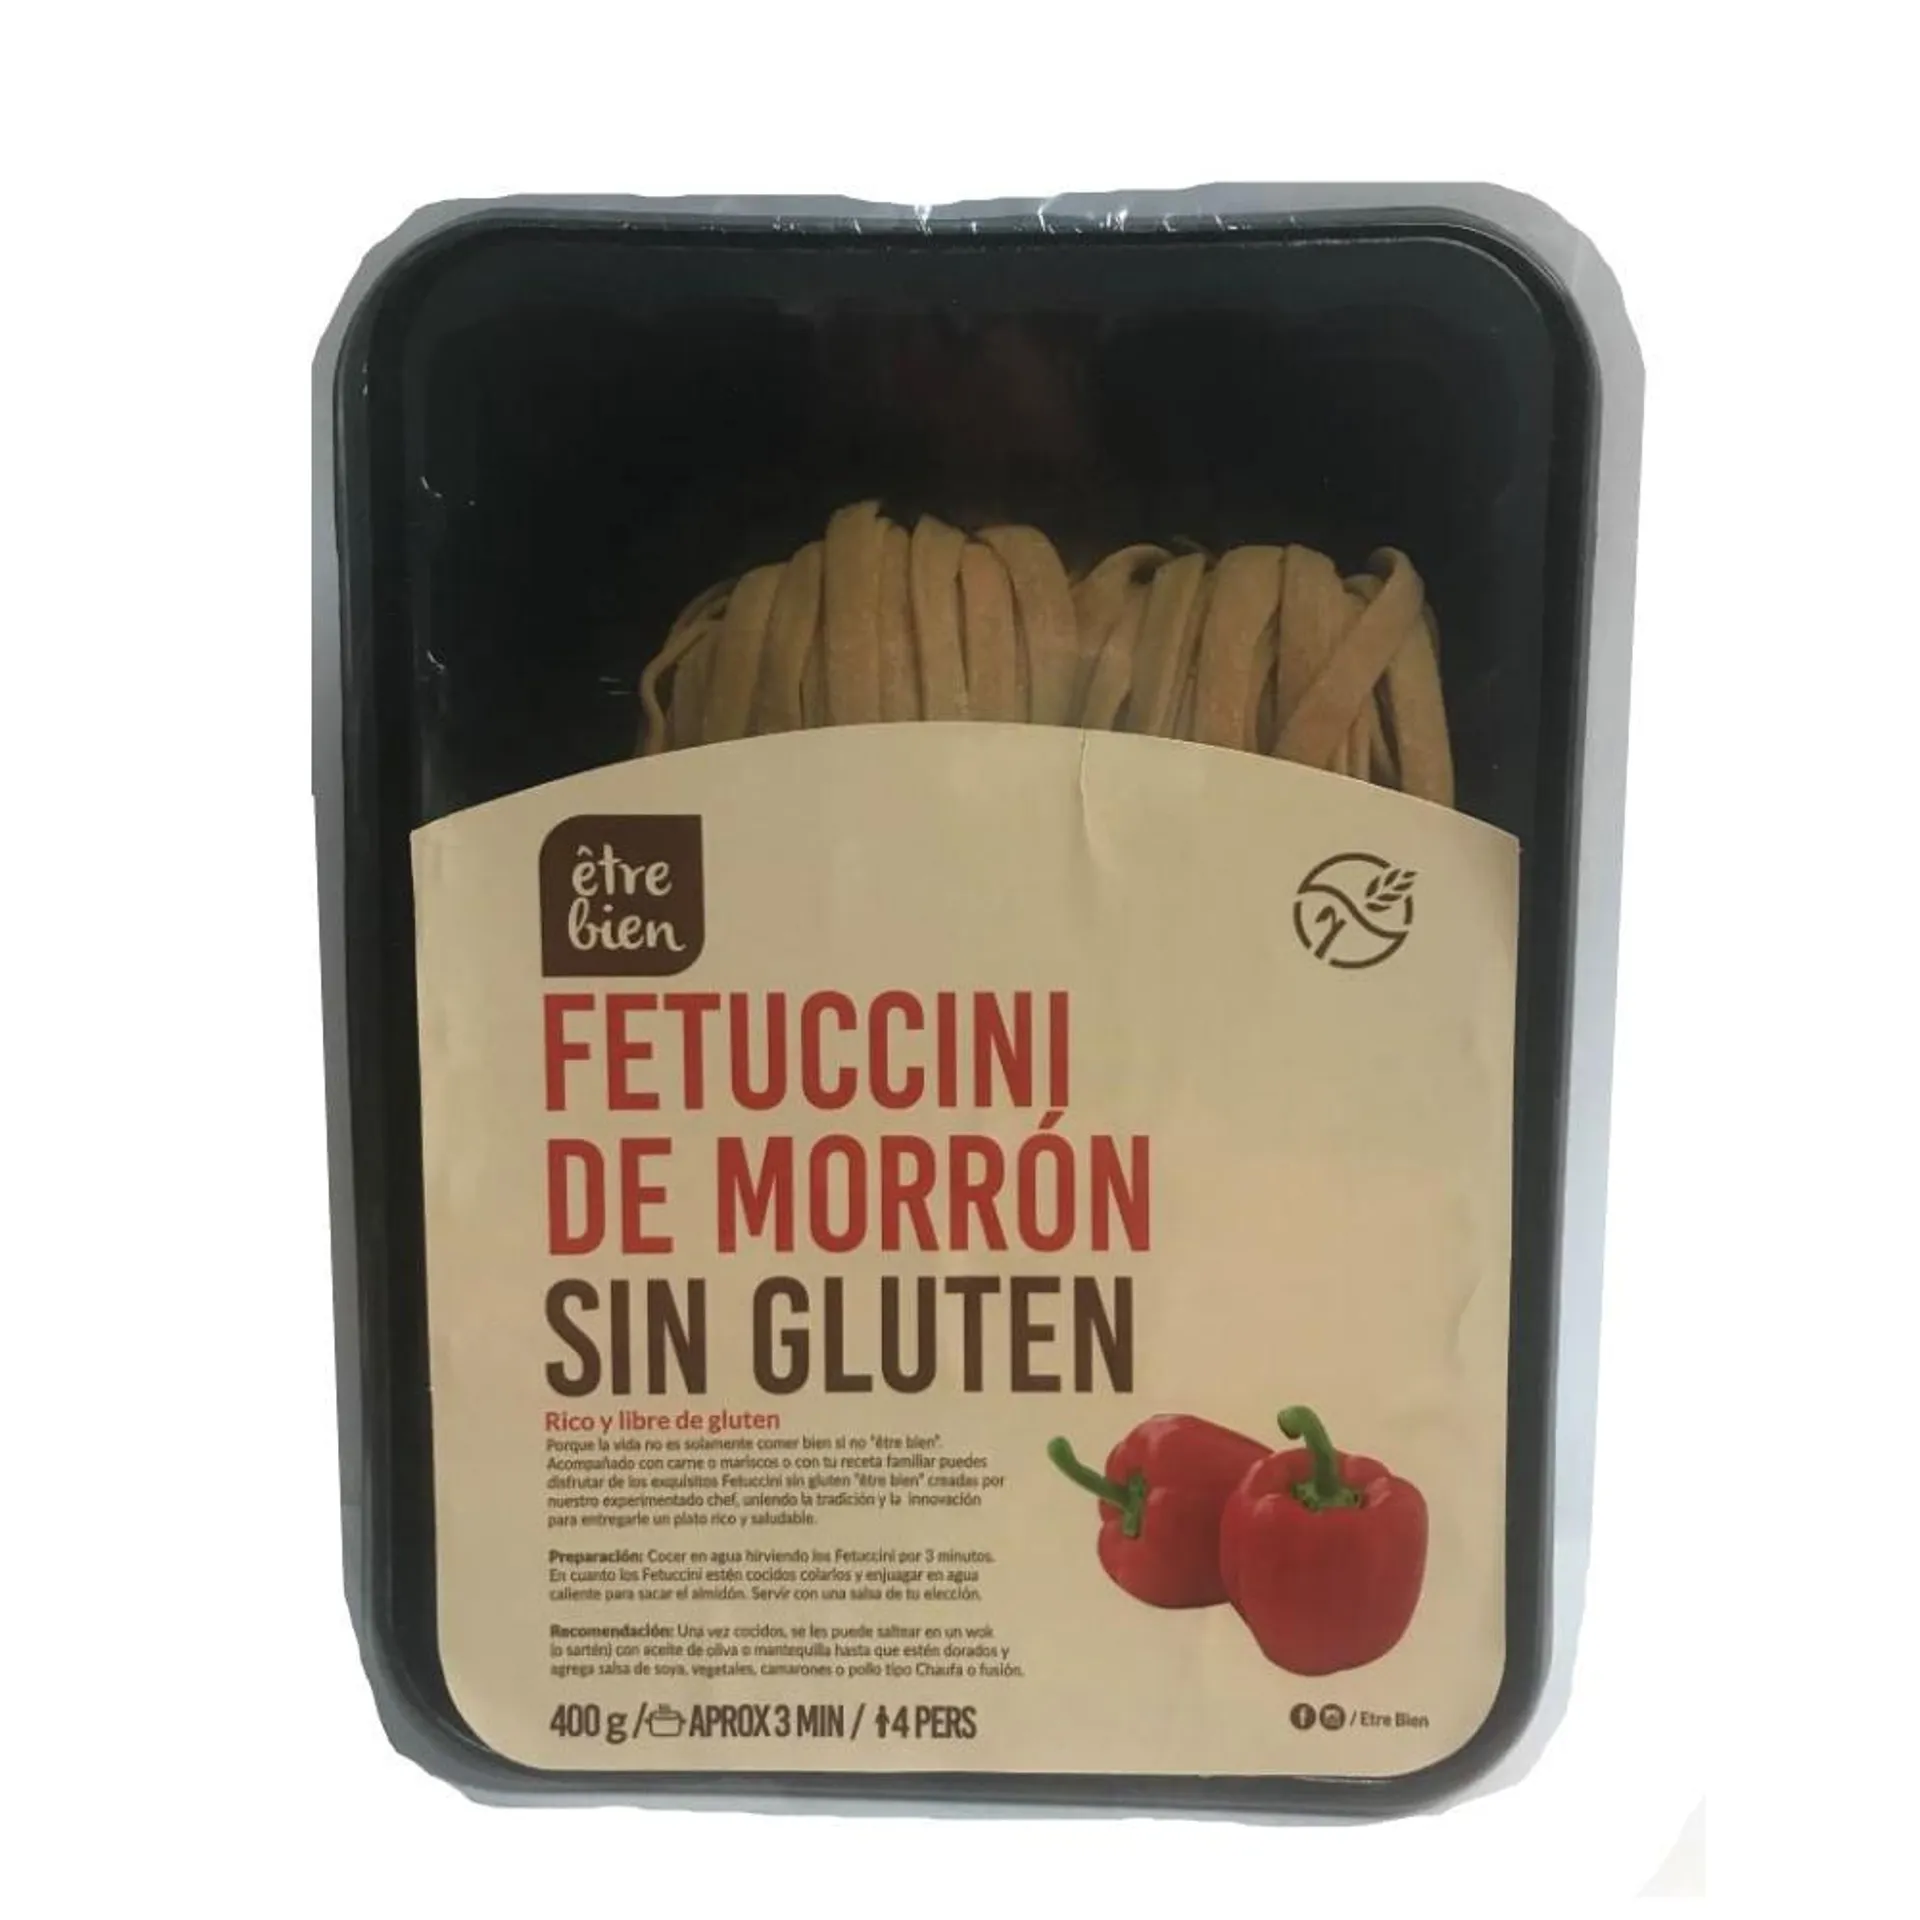 Fetuccini de morrón Etre Bien sin gluten bandeja 400 g